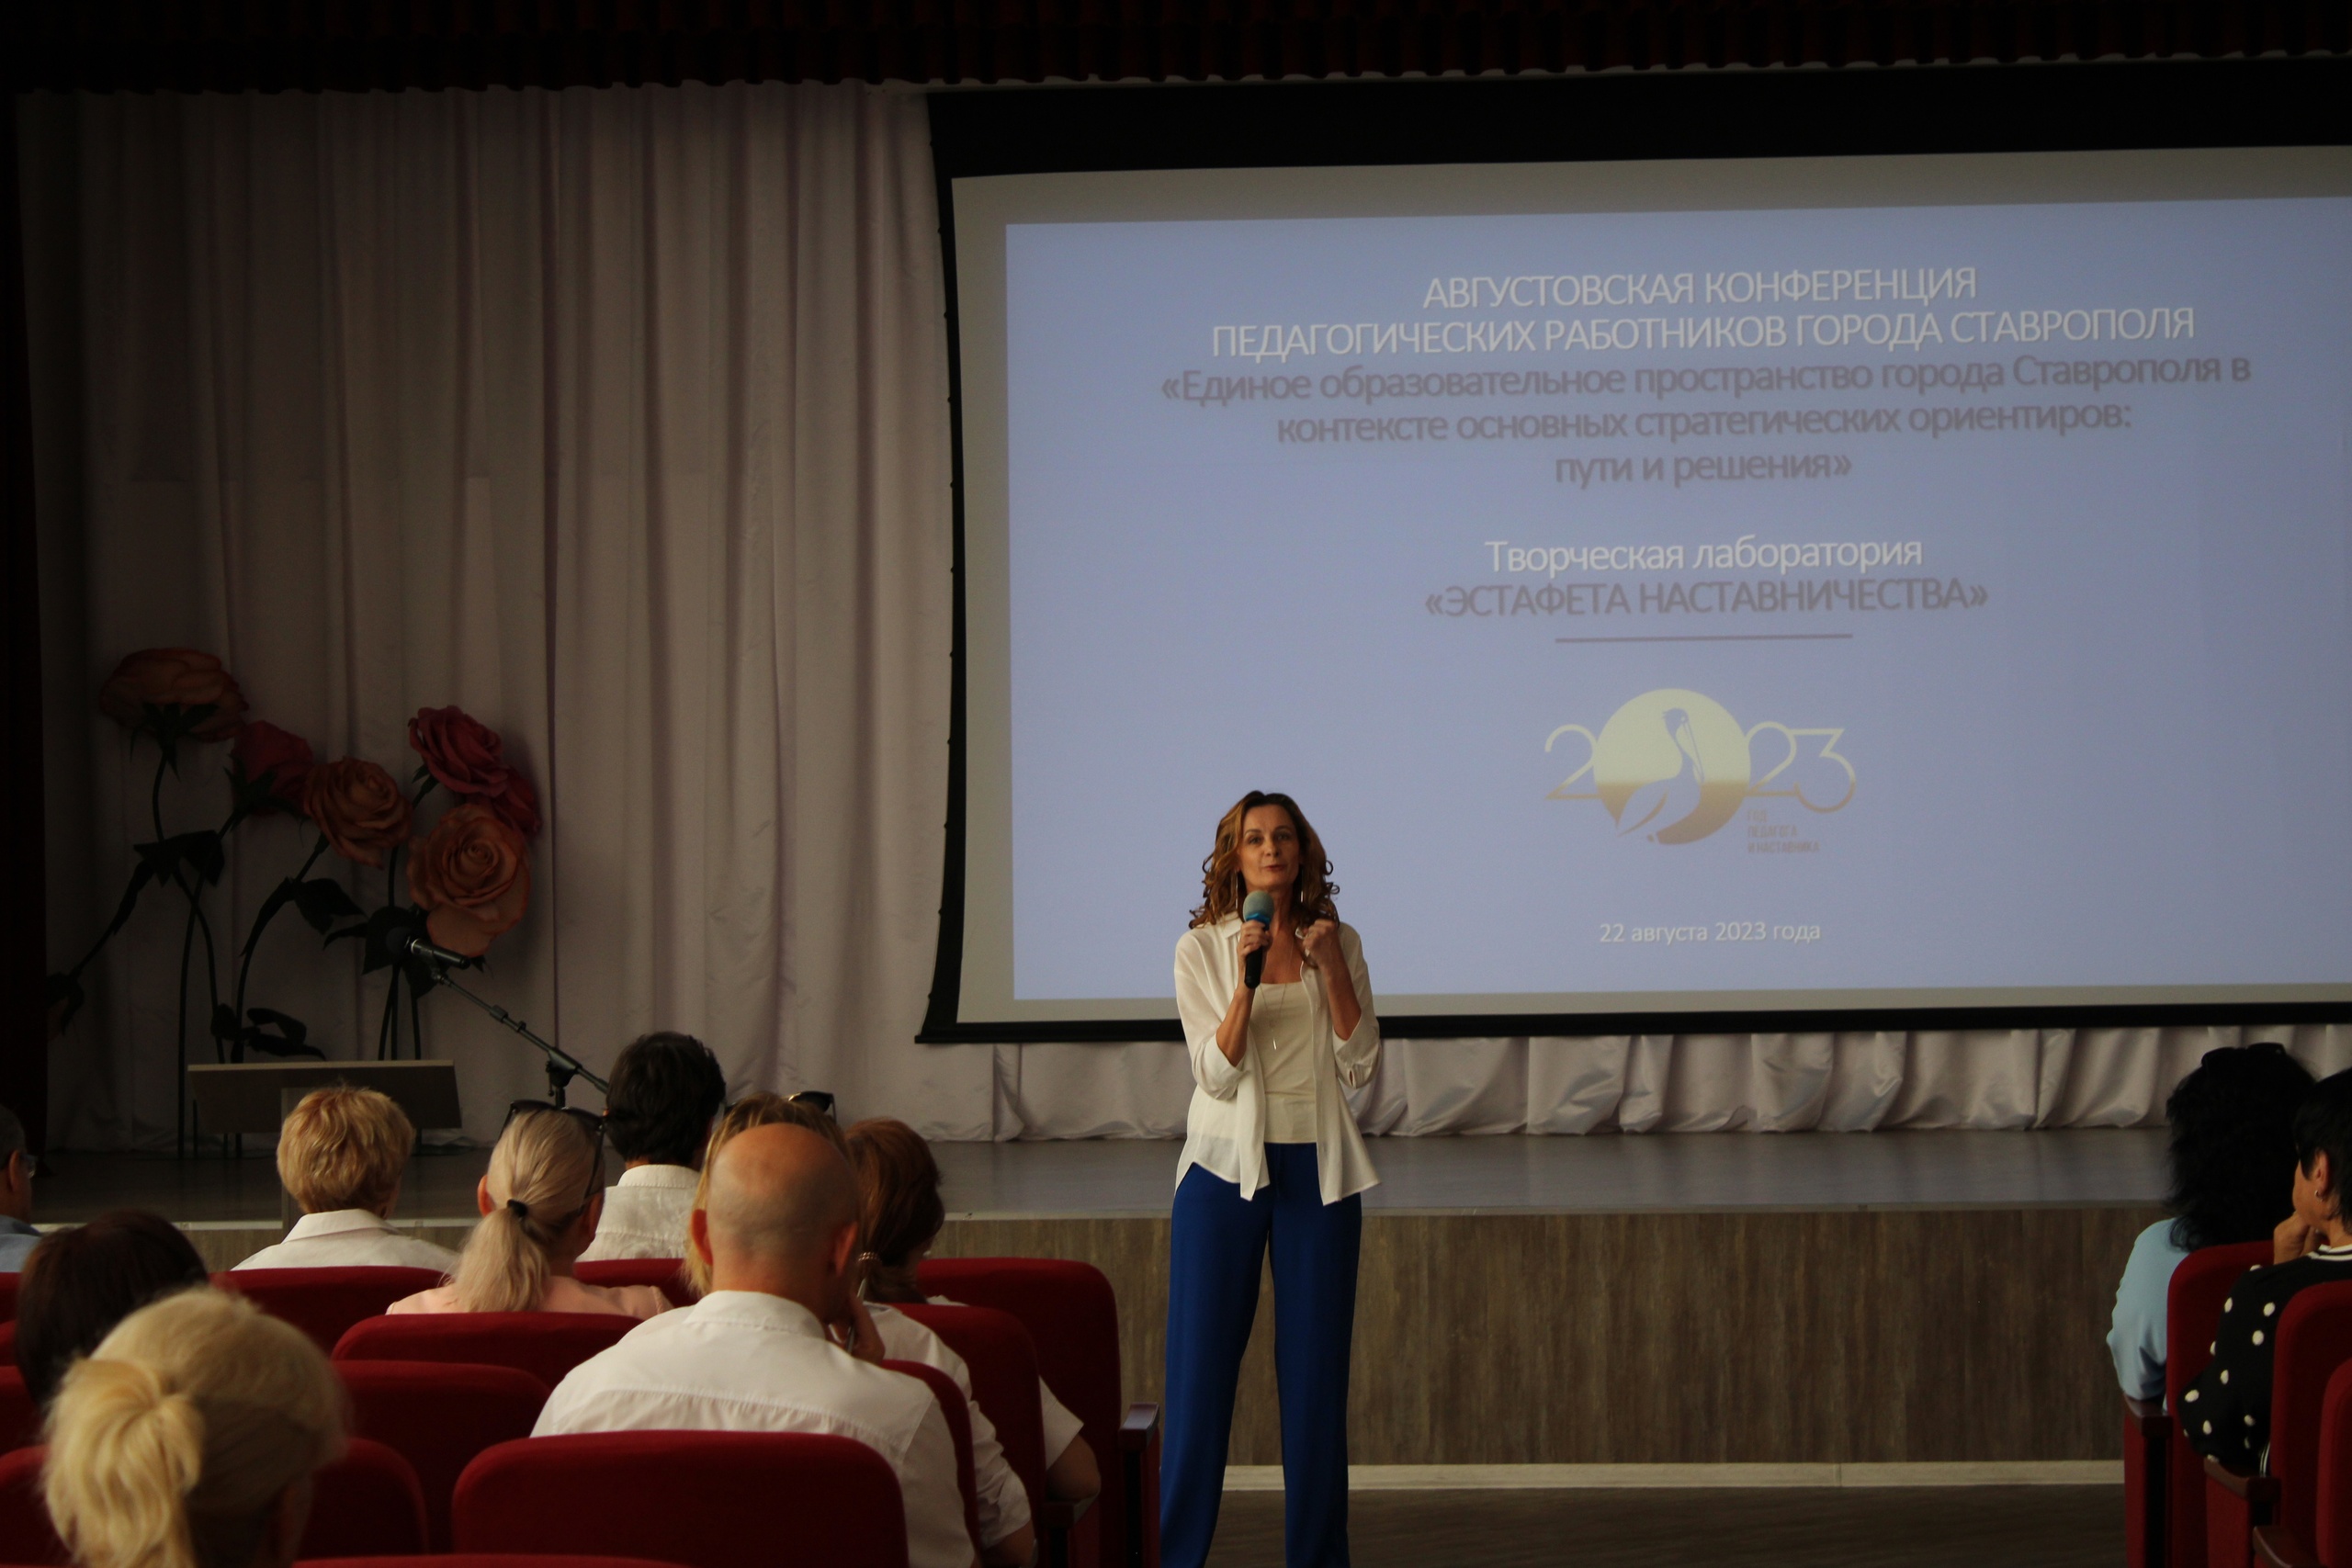 Участие в городской творческой лаборатории «Эстафета наставничества» в рамках августовской конференции педагогических работников города Ставрополя.